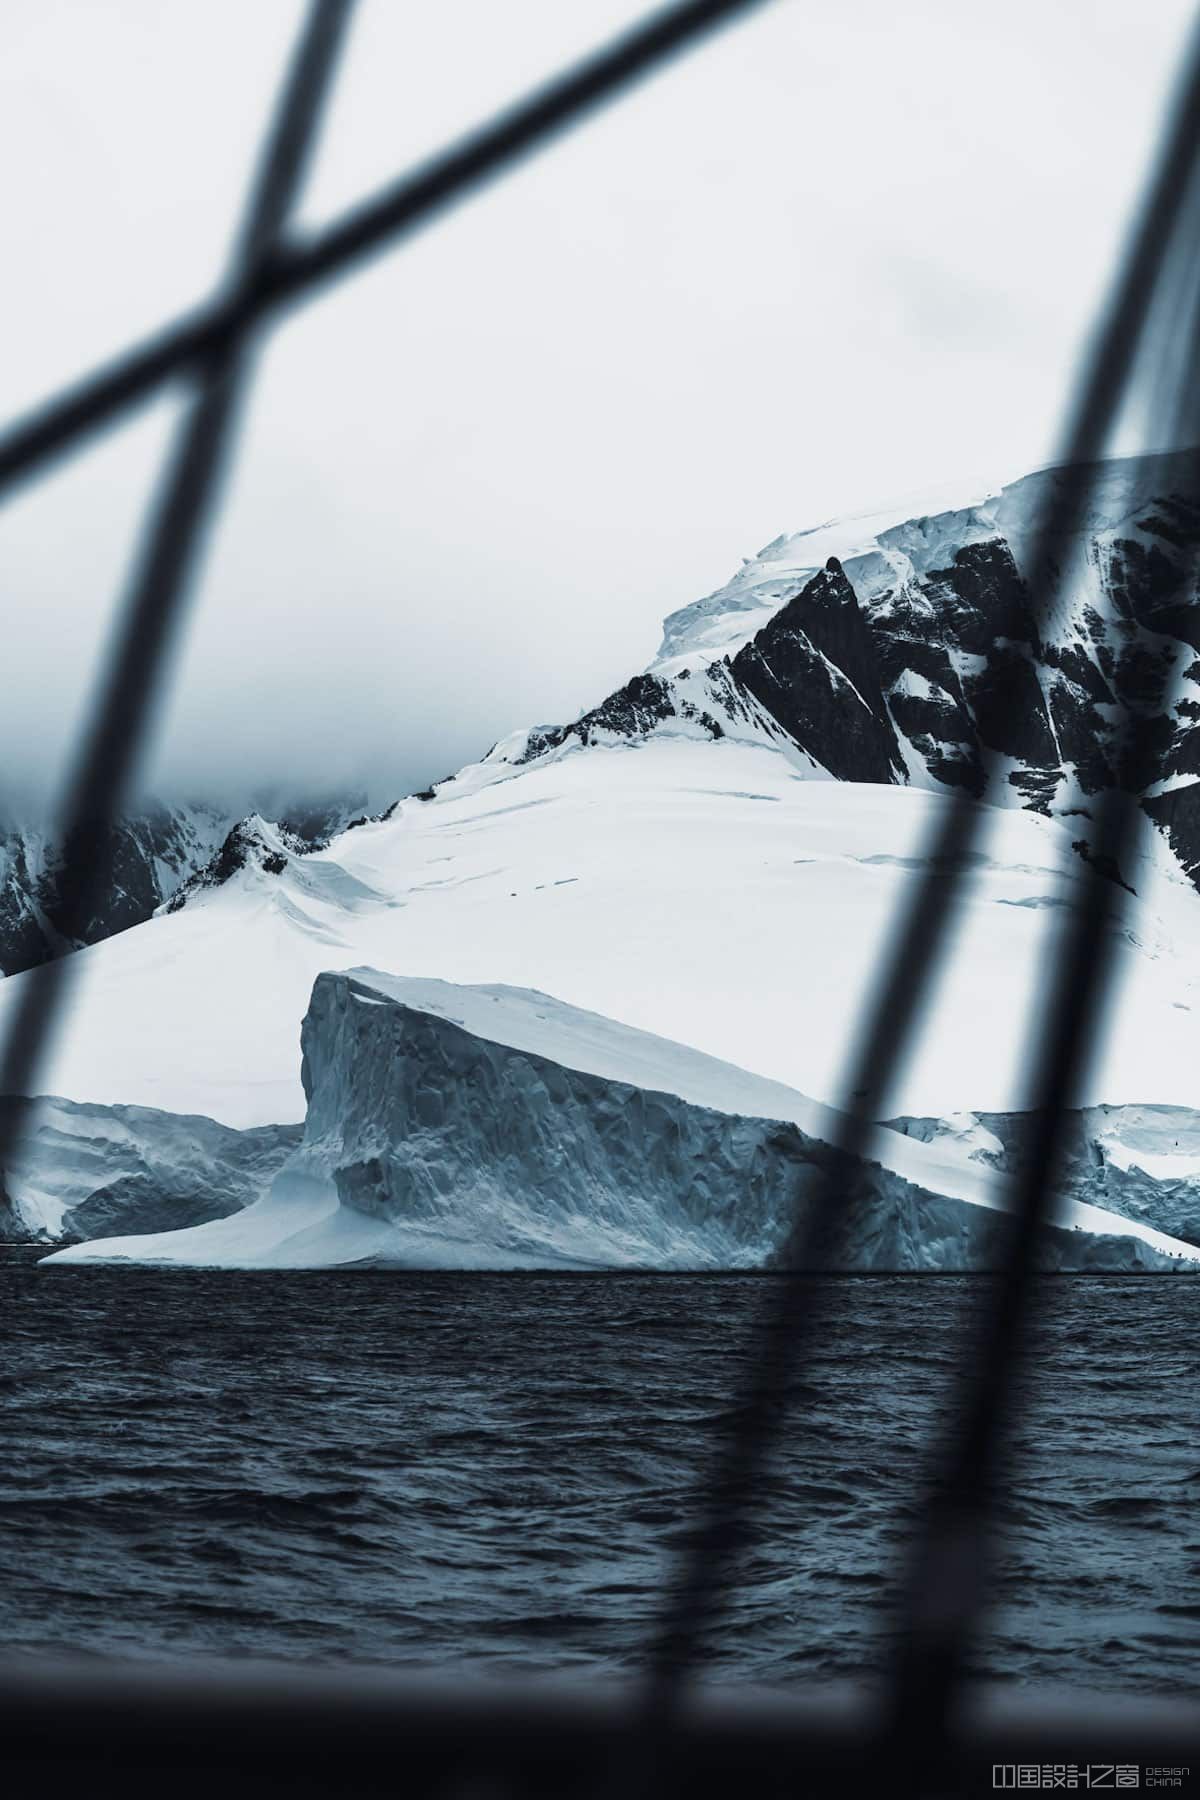 Landscape Photos of Antarctica by Jan Erik Waider